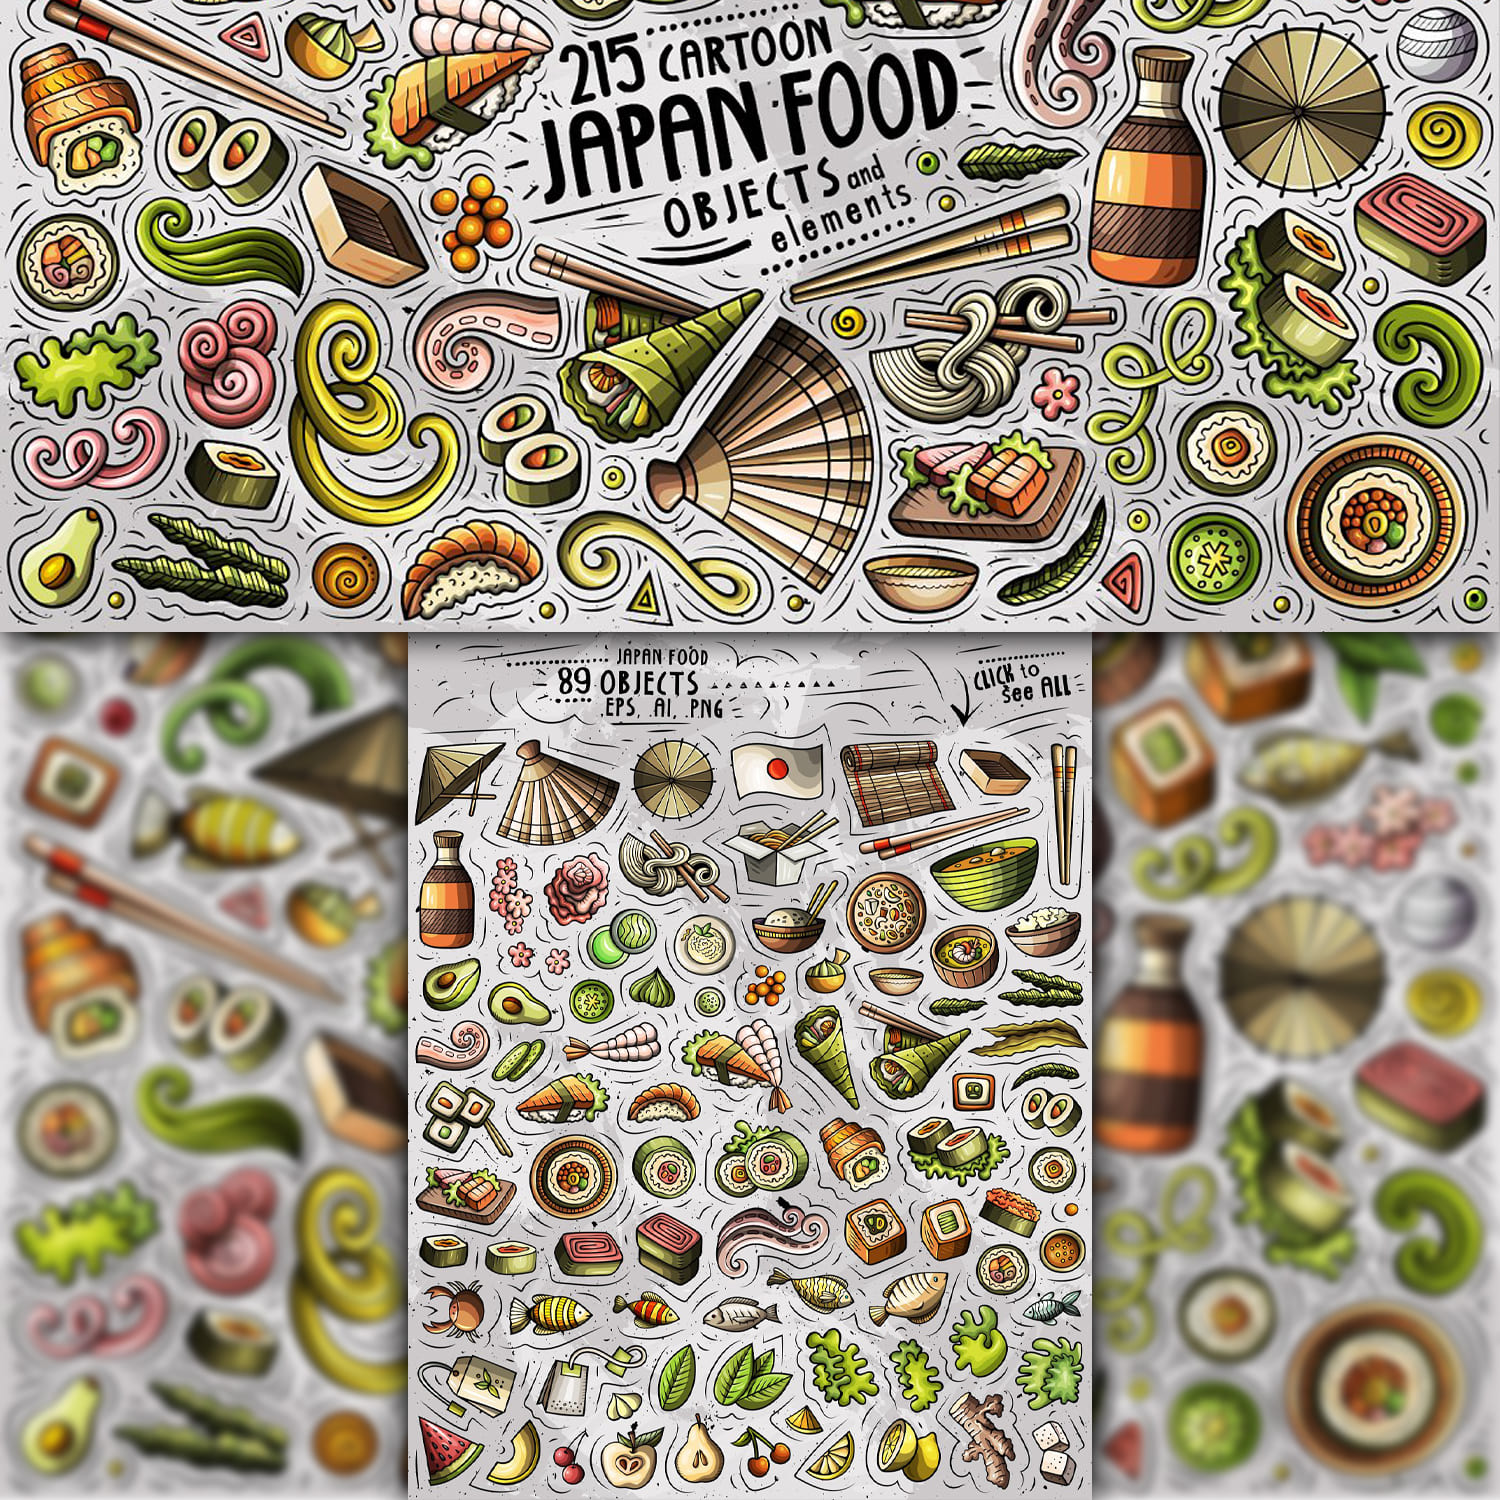 Japan Food Cartoon Objects Set 1500 1500 1.